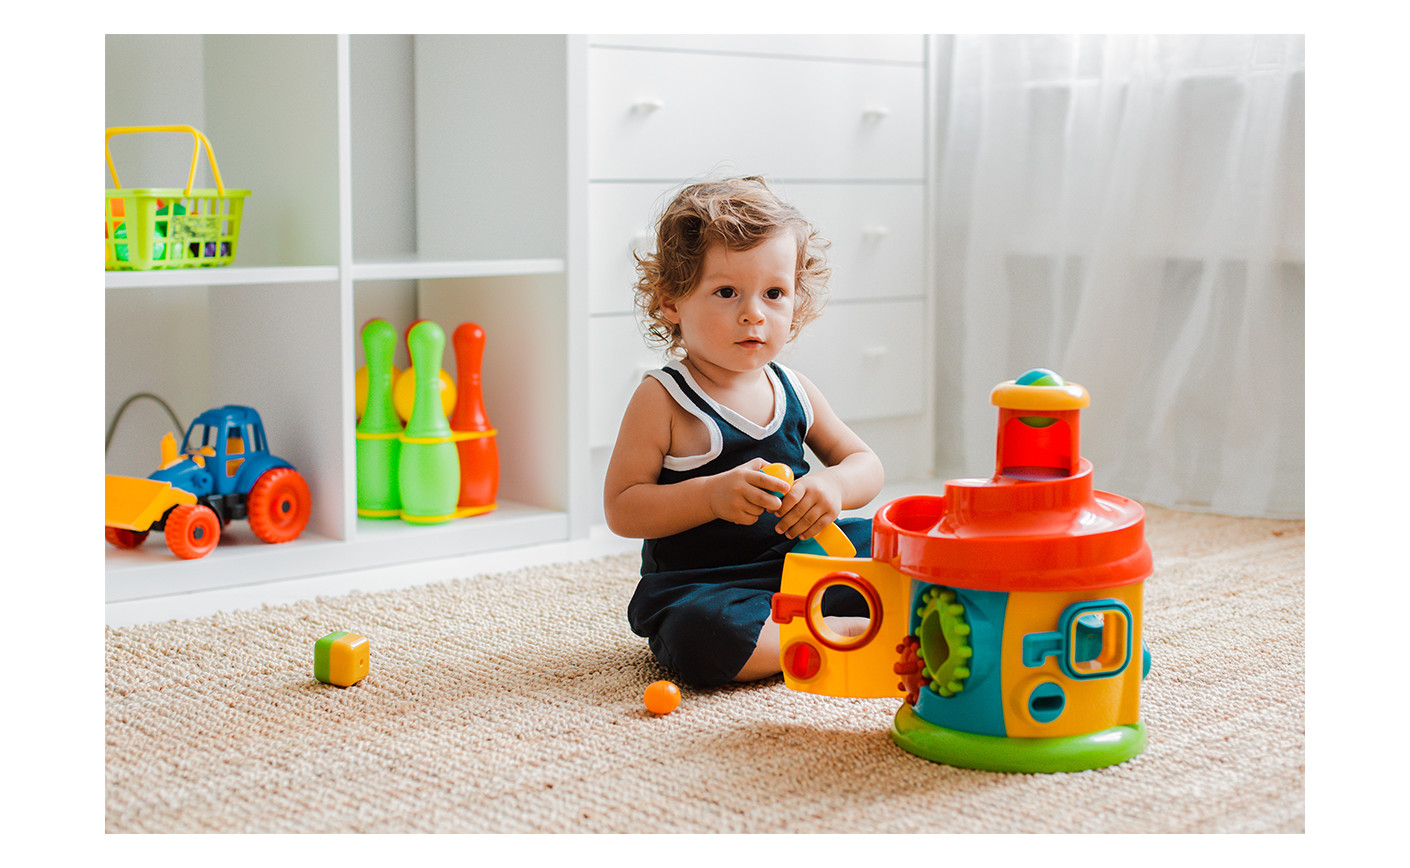 Prosta i rozwijająca zabawka – wybierz sorter dla dziecka